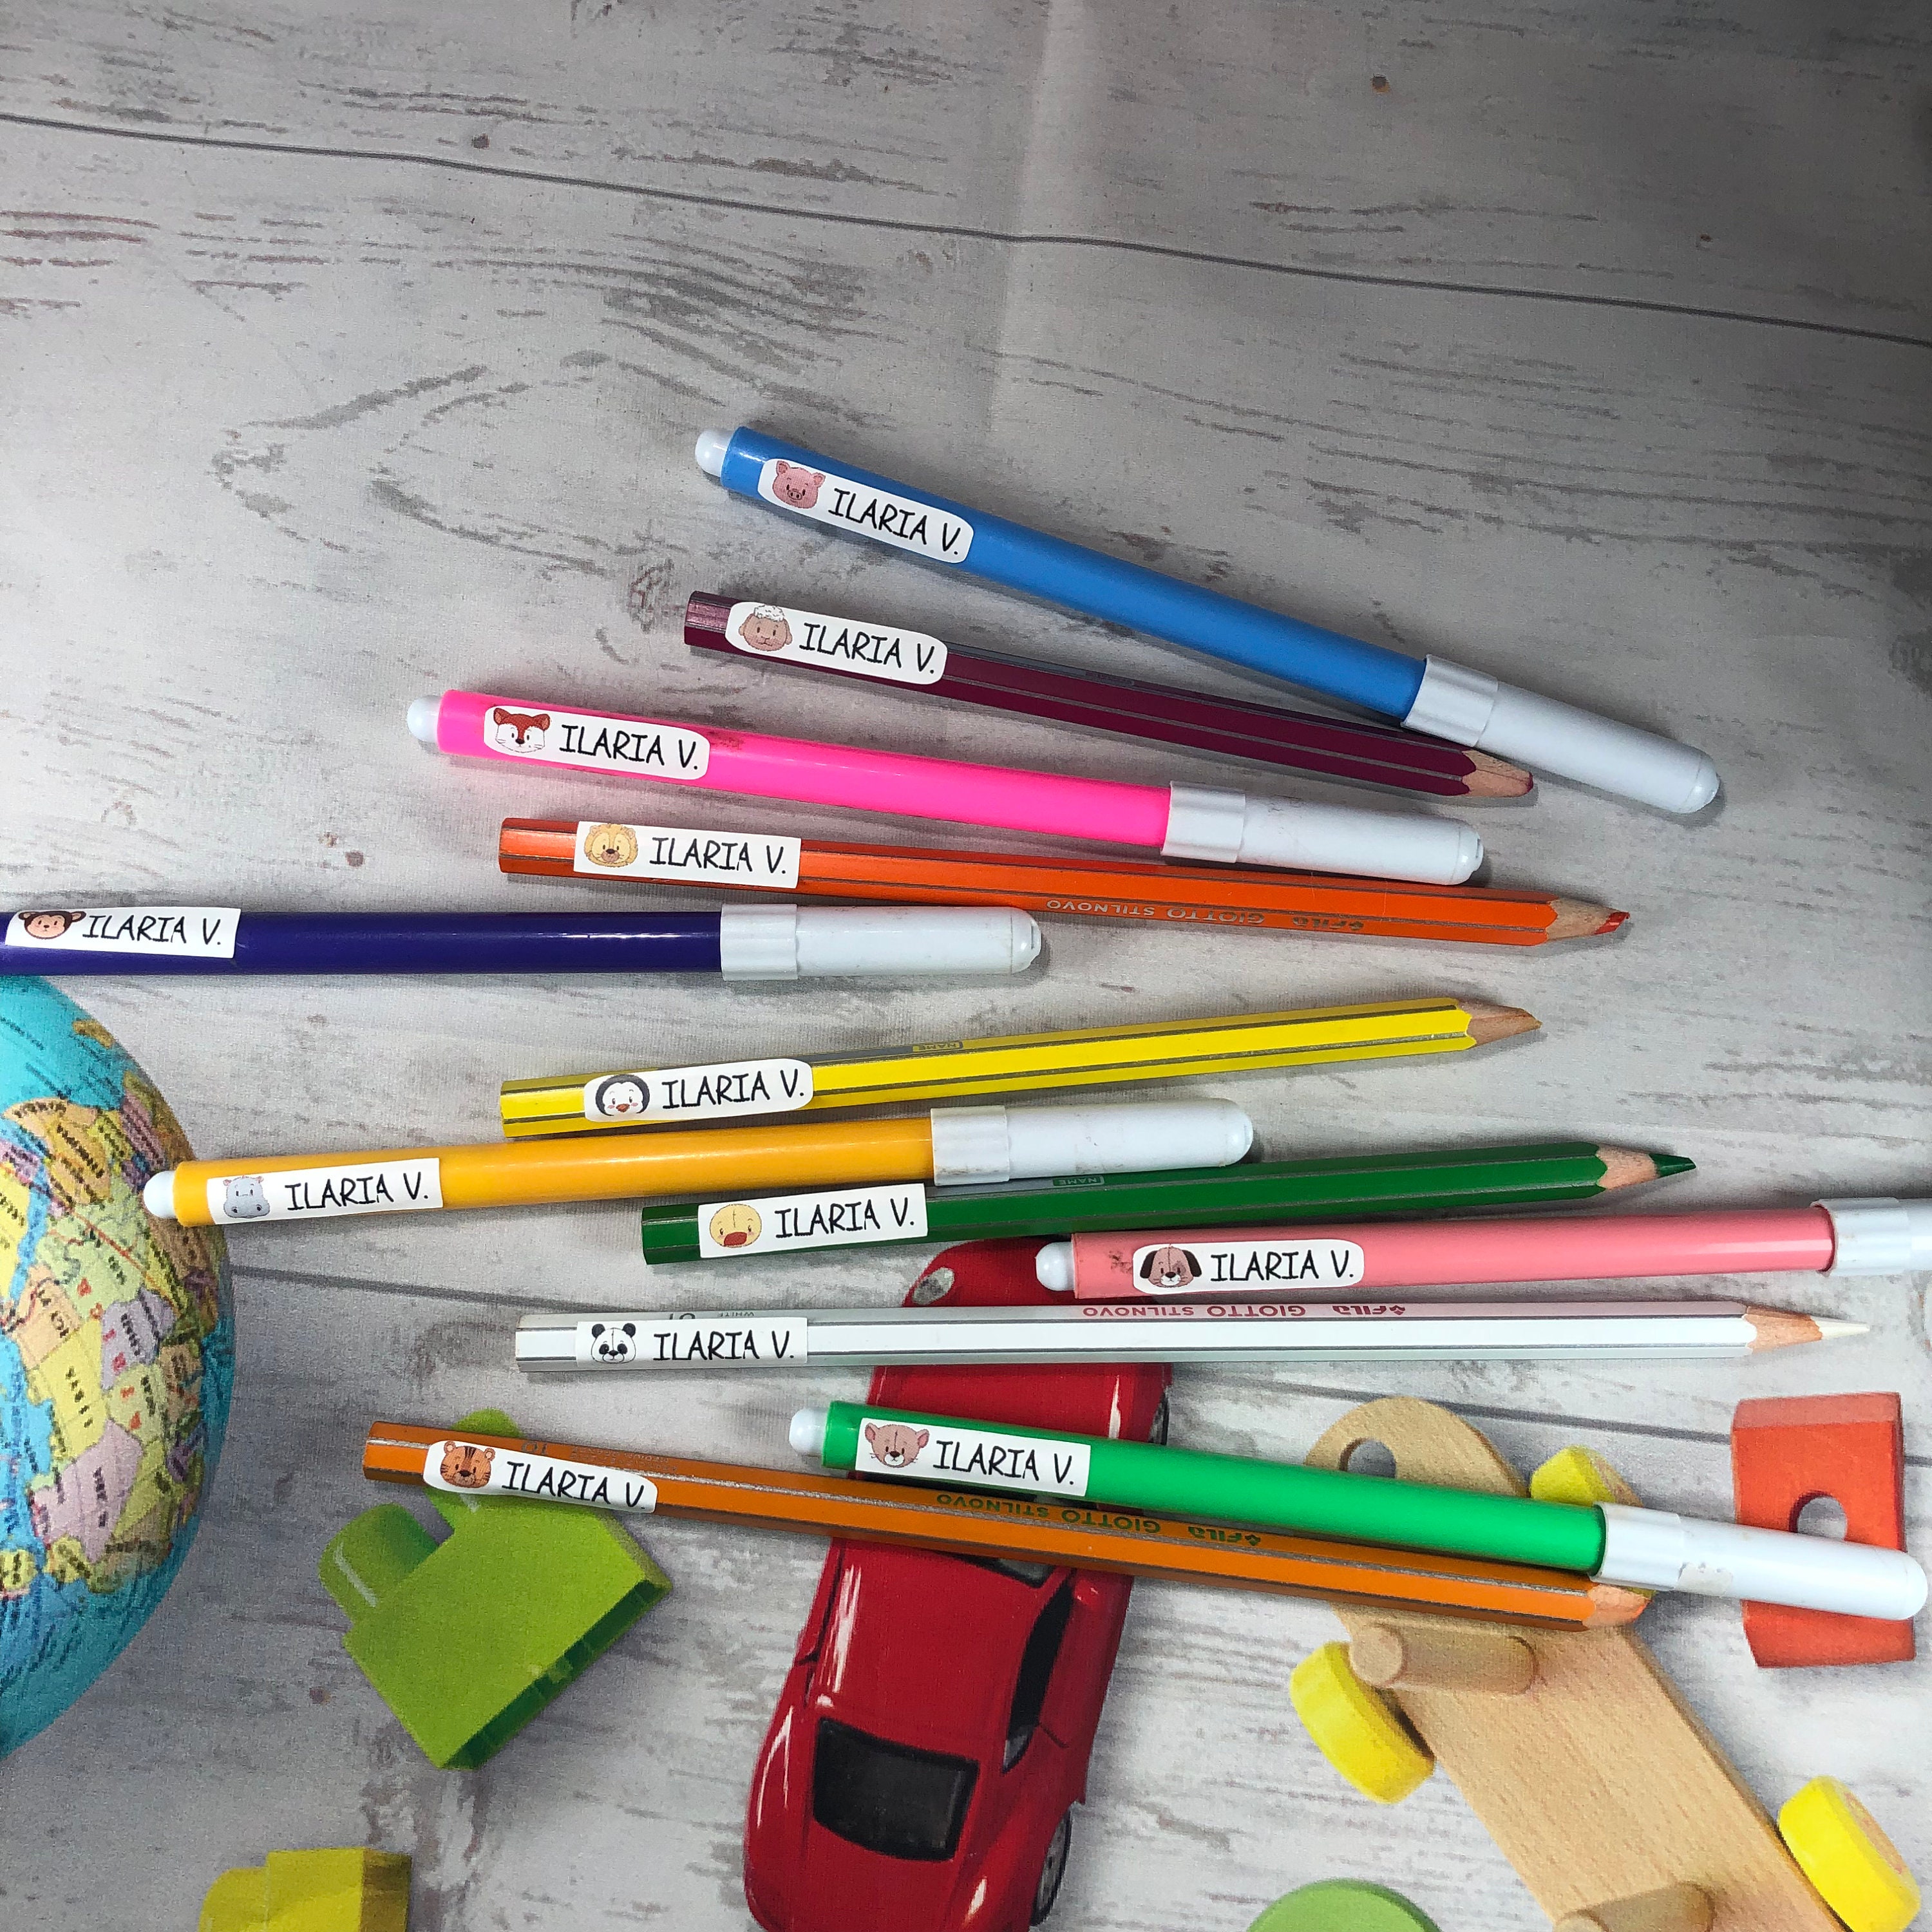 Colorfamily Etichette adesive personalizzate con nome per matite, penne,  libri quaderni, scuola, asilo, elementari. Set da 100 pezzi, dimensioni 4,6  x